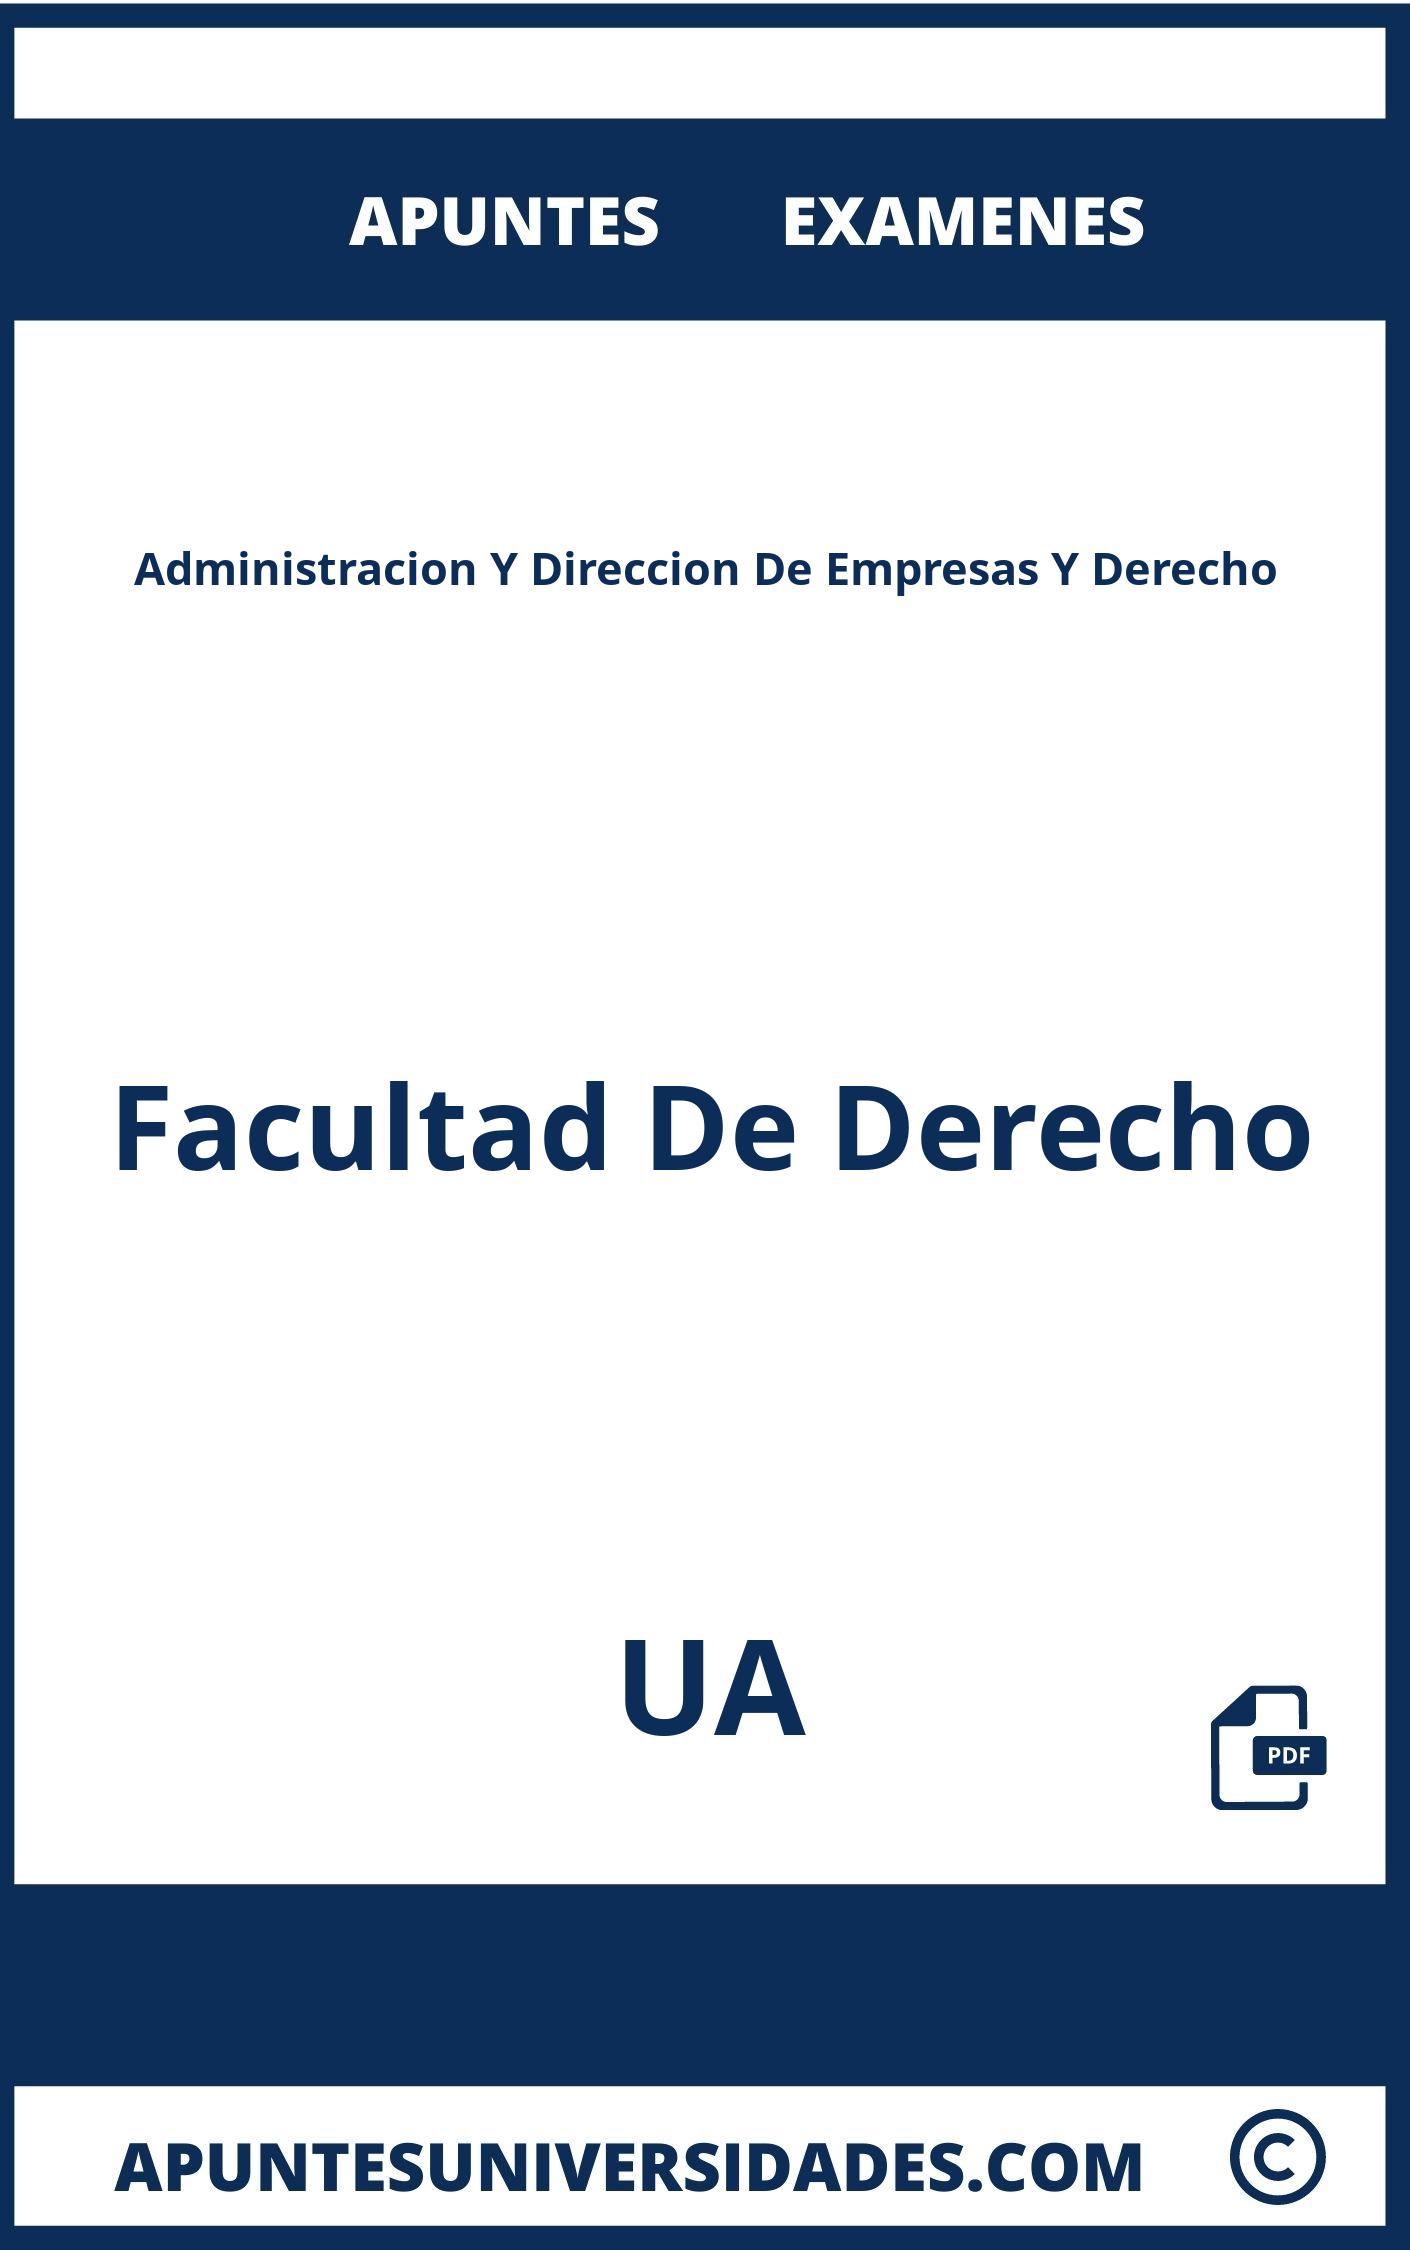 Examenes y Apuntes de Administracion Y Direccion De Empresas Y Derecho UA